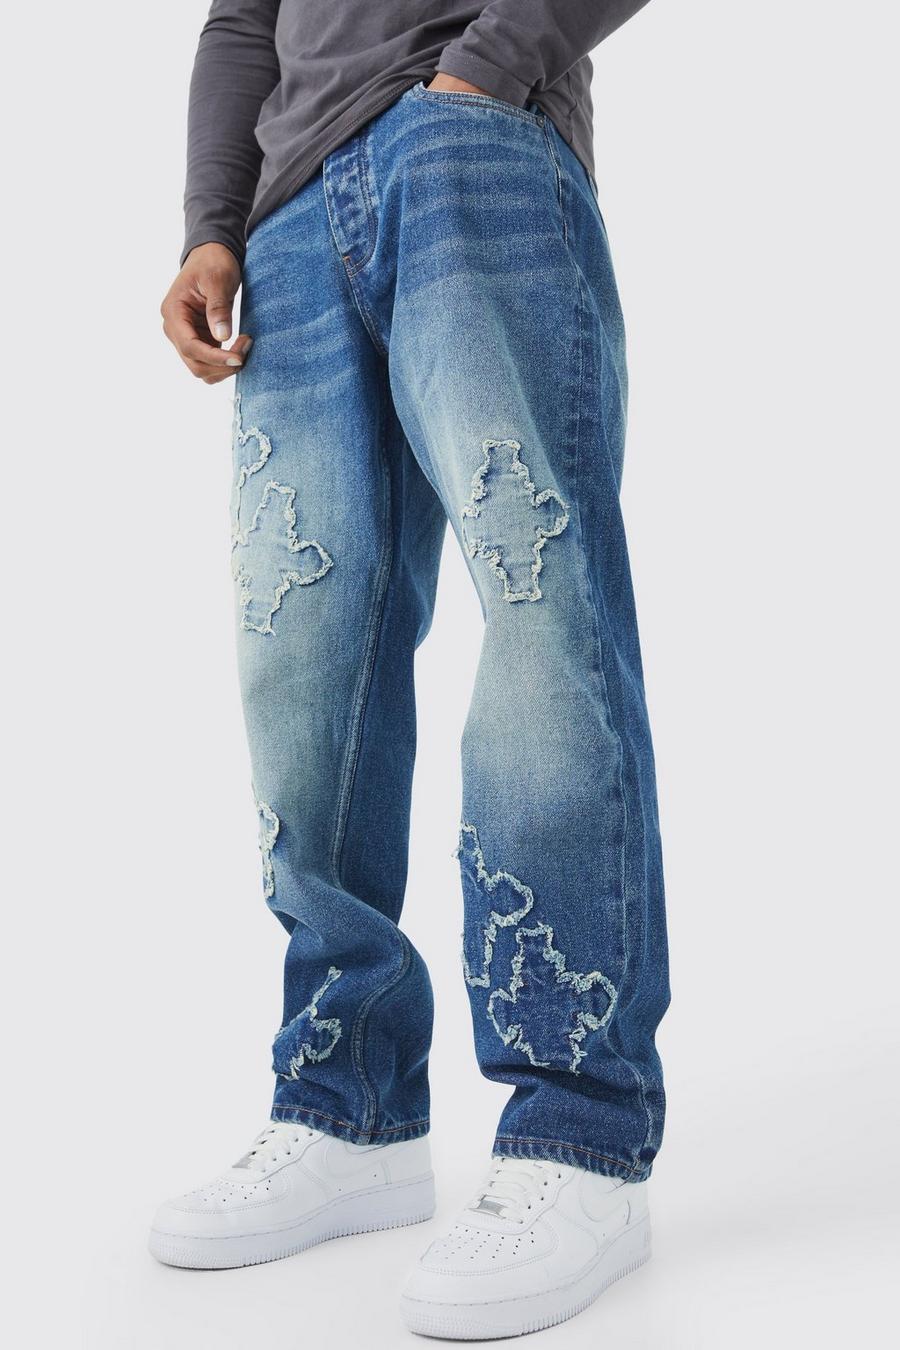 Jeans rilassati con applique incrociate e fondo grezzo, Antique wash image number 1